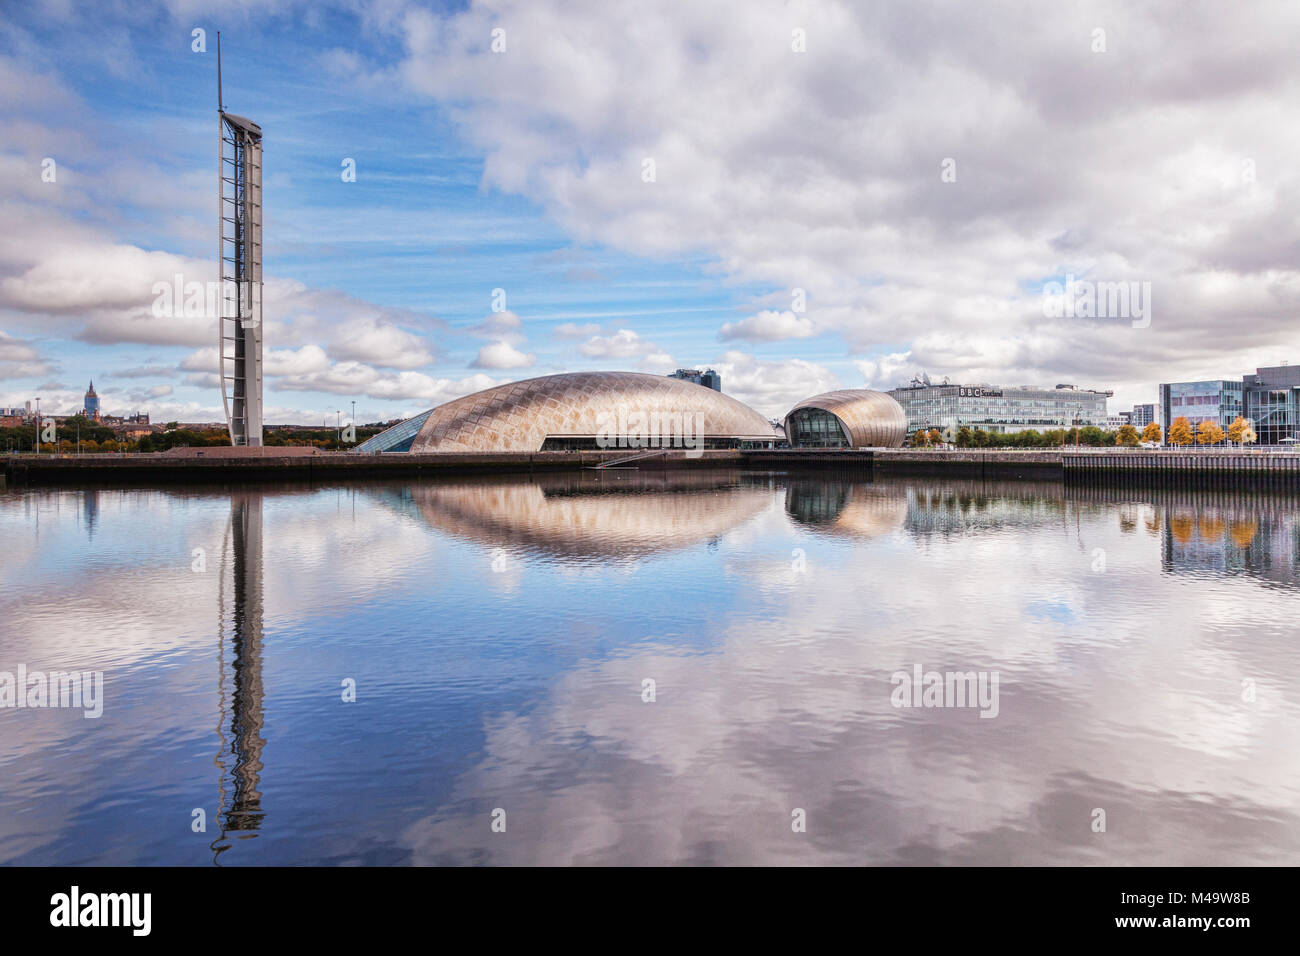 La tour de Glasgow, le Centre des sciences, le Cinéma Imax et BBC Scotland HQ, partie de la Clyde Waterfront Regeneration, Glasgow, Écosse, Royaume-Uni Banque D'Images